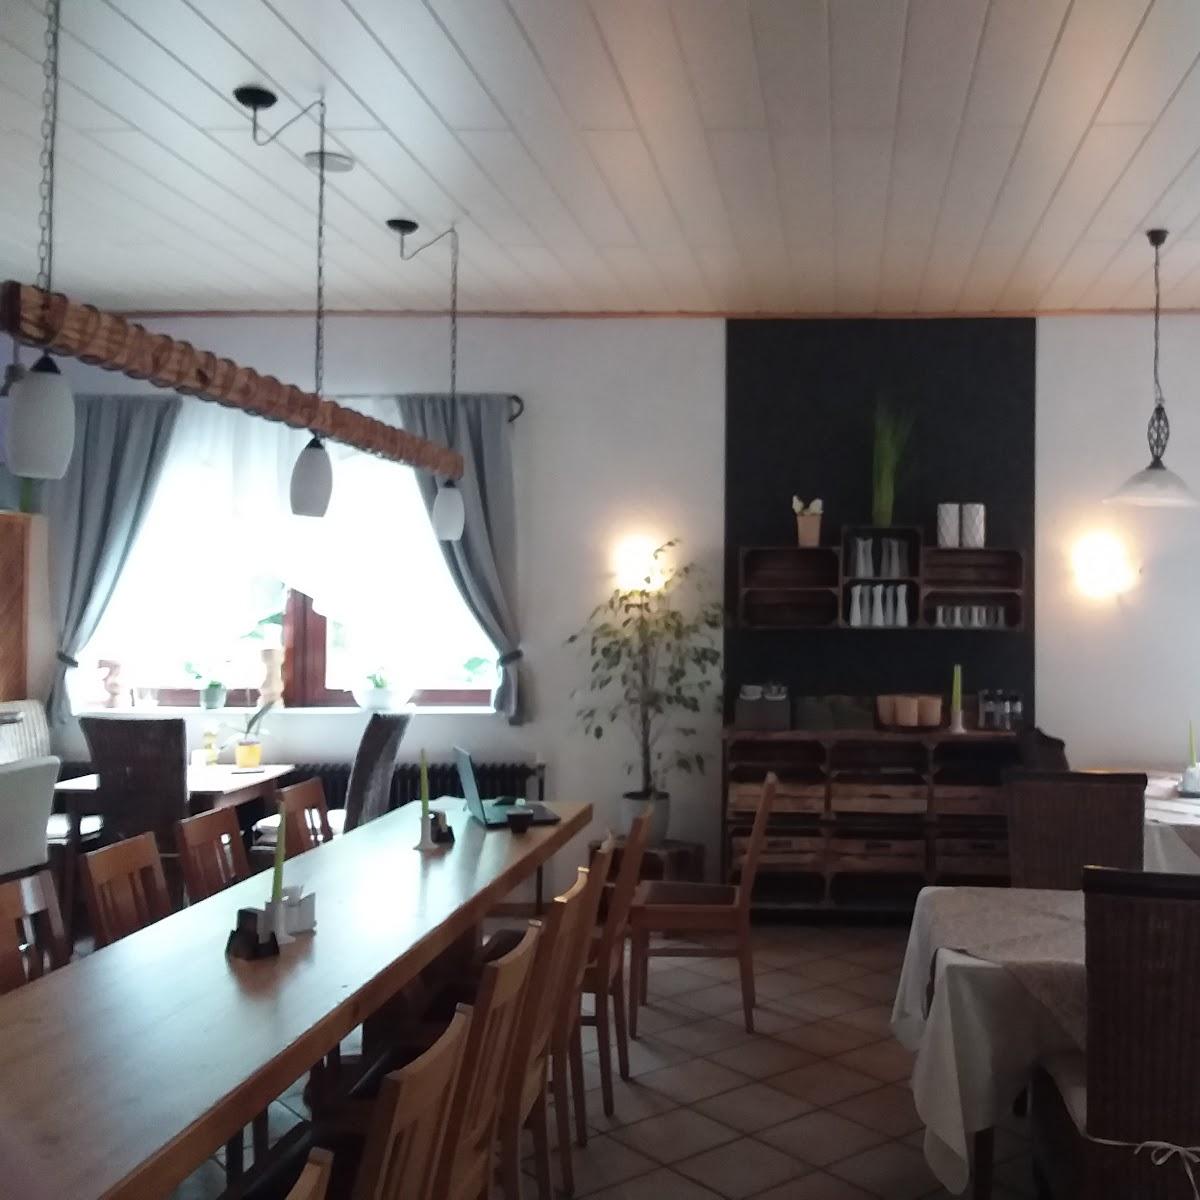 Restaurant "Gaststätte zur Krabbenschänke" in Bretten